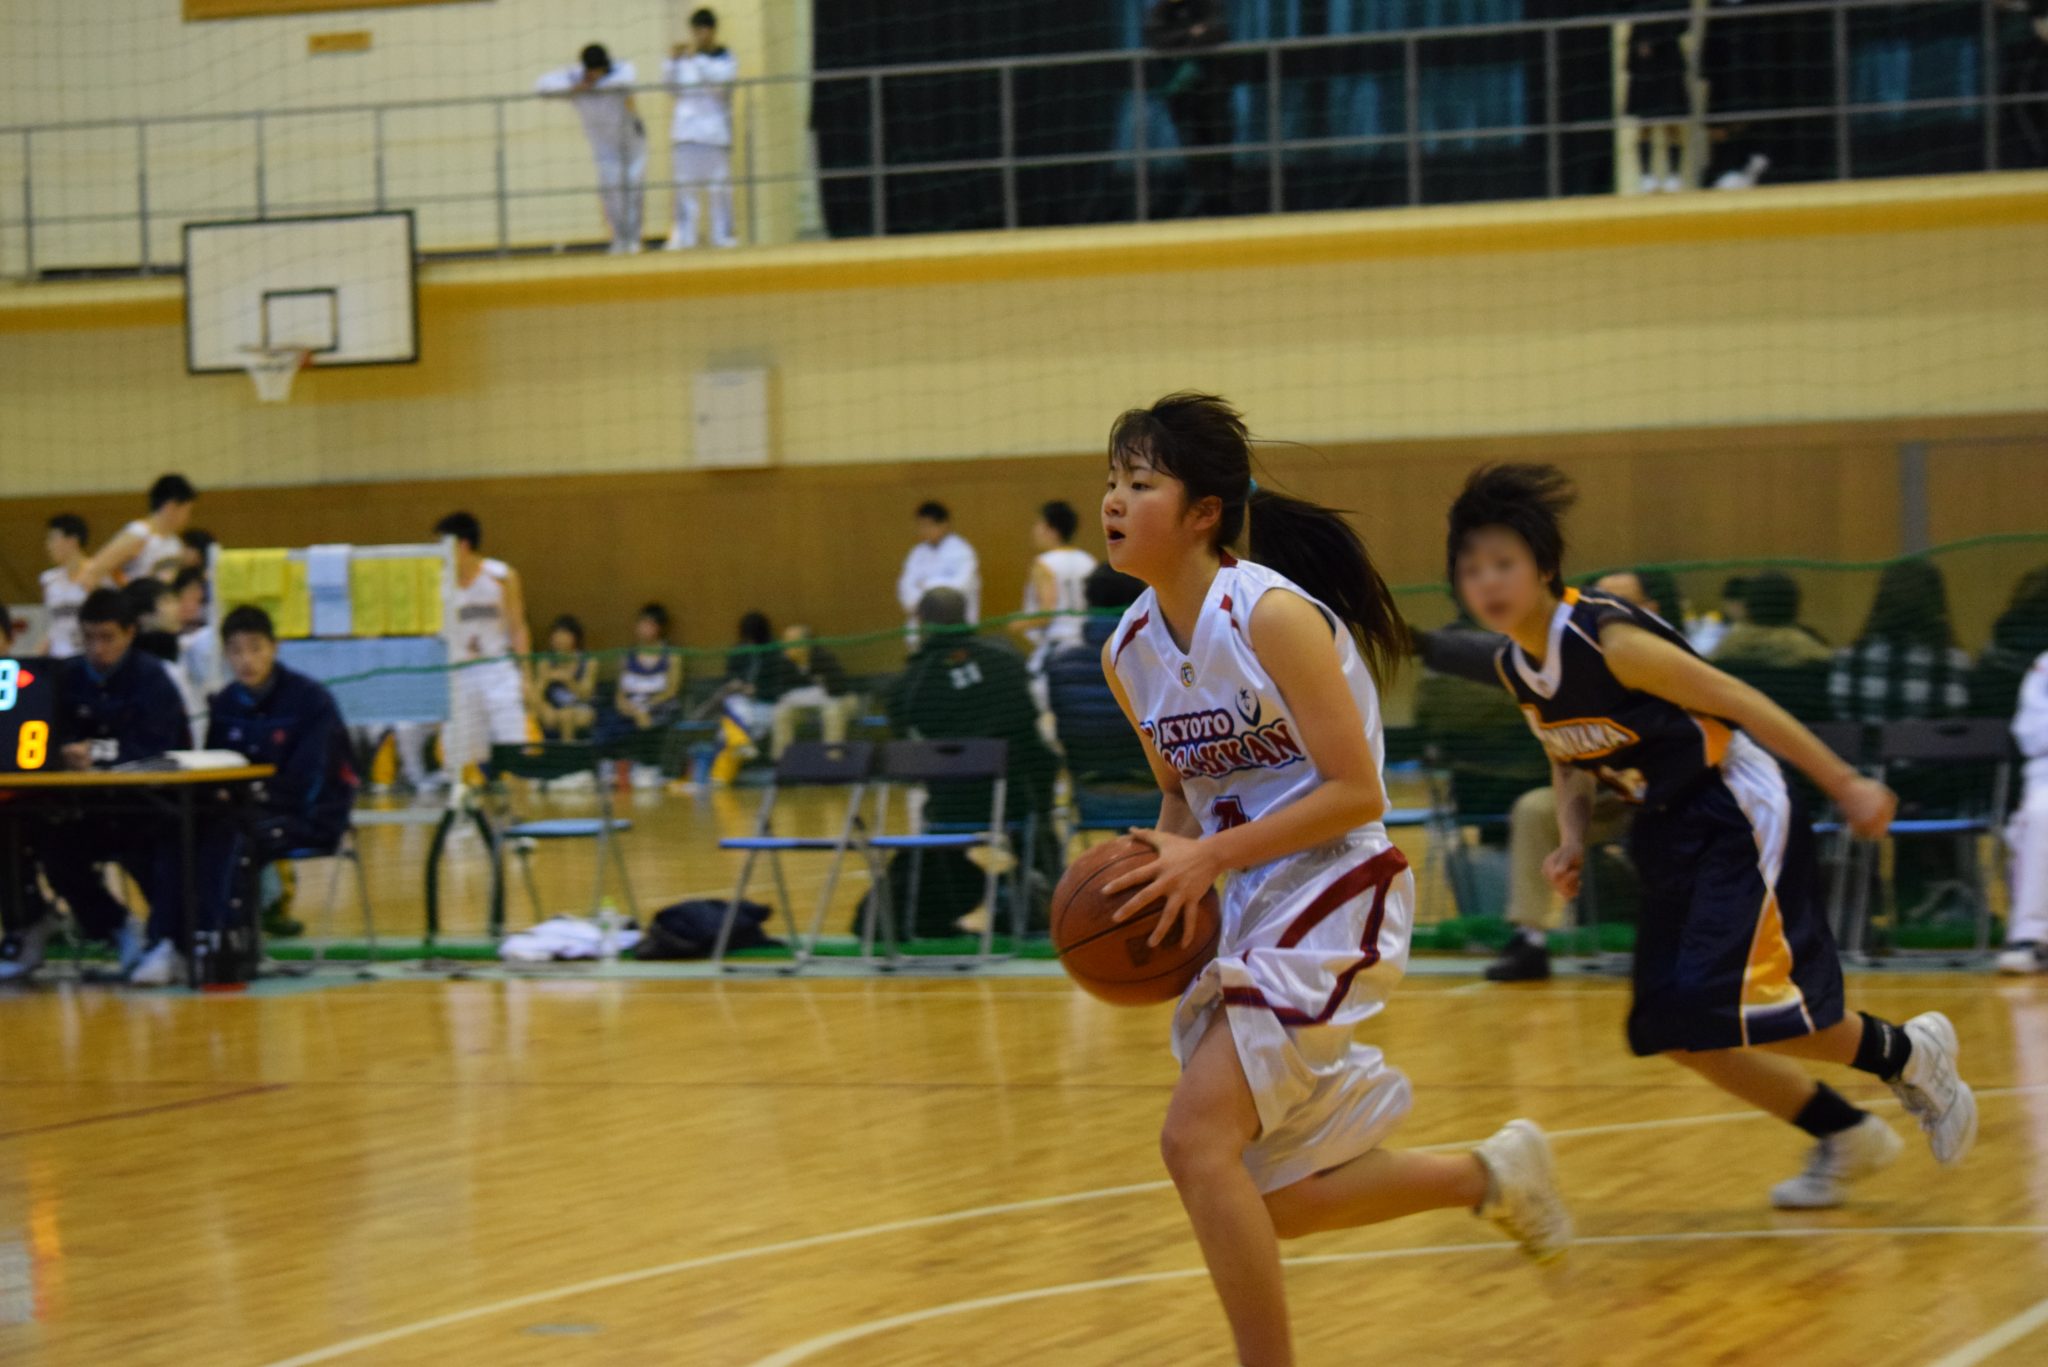 バスケットボール部女子 新人大会 京都廣学館高等学校 きょうとこうがっかんこうとうがっこう 公式hp